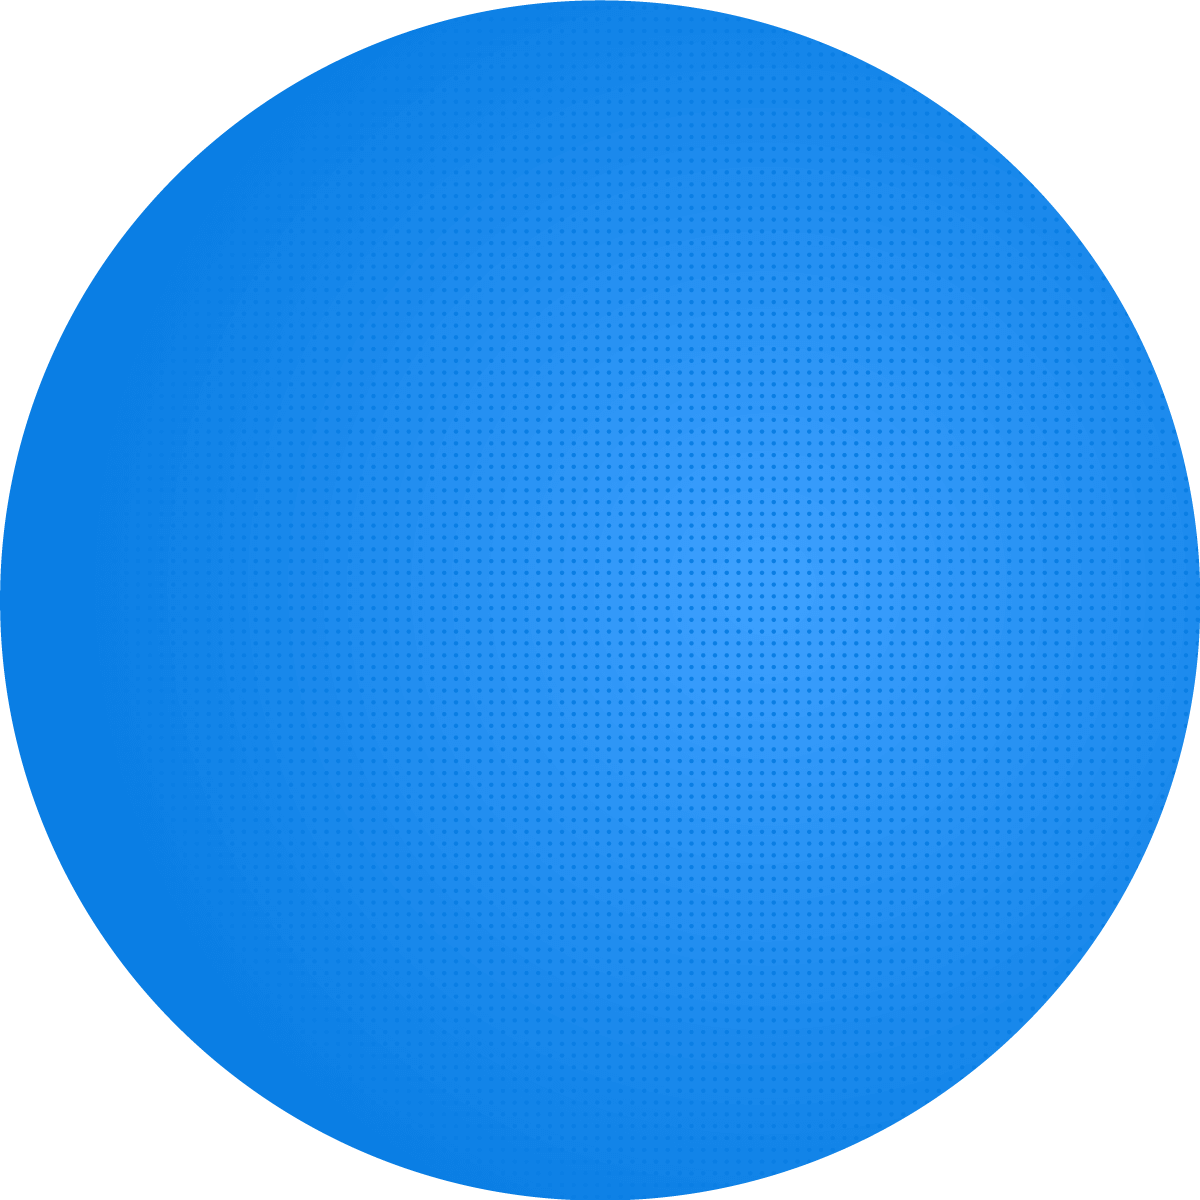 Círculo azul como textura